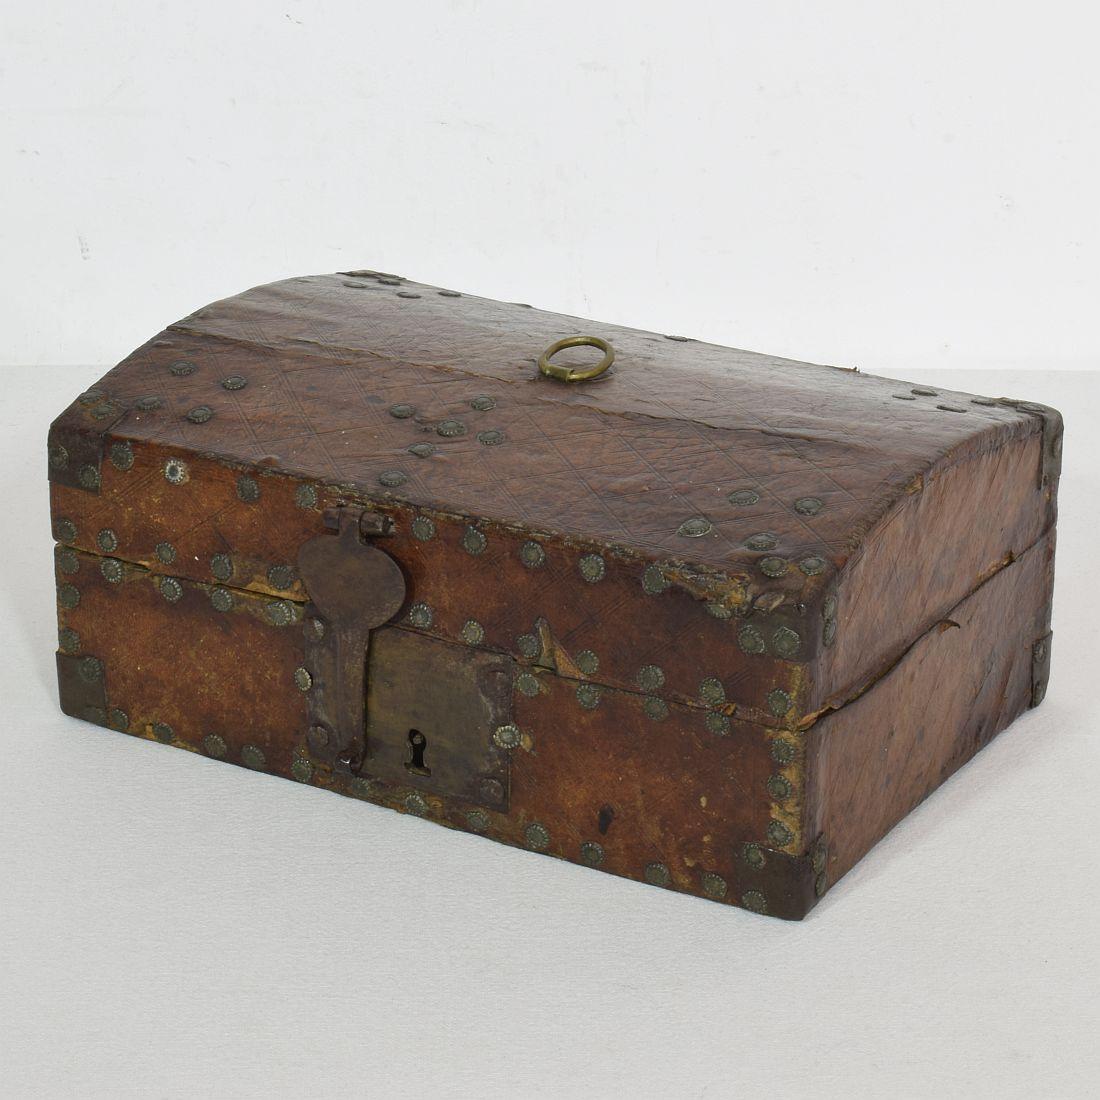 Boîte très ancienne recouverte de cuir et de décorations métalliques. 
Une trouvaille rare.
France, vers 1600-1700
Usé et quelques pertes.